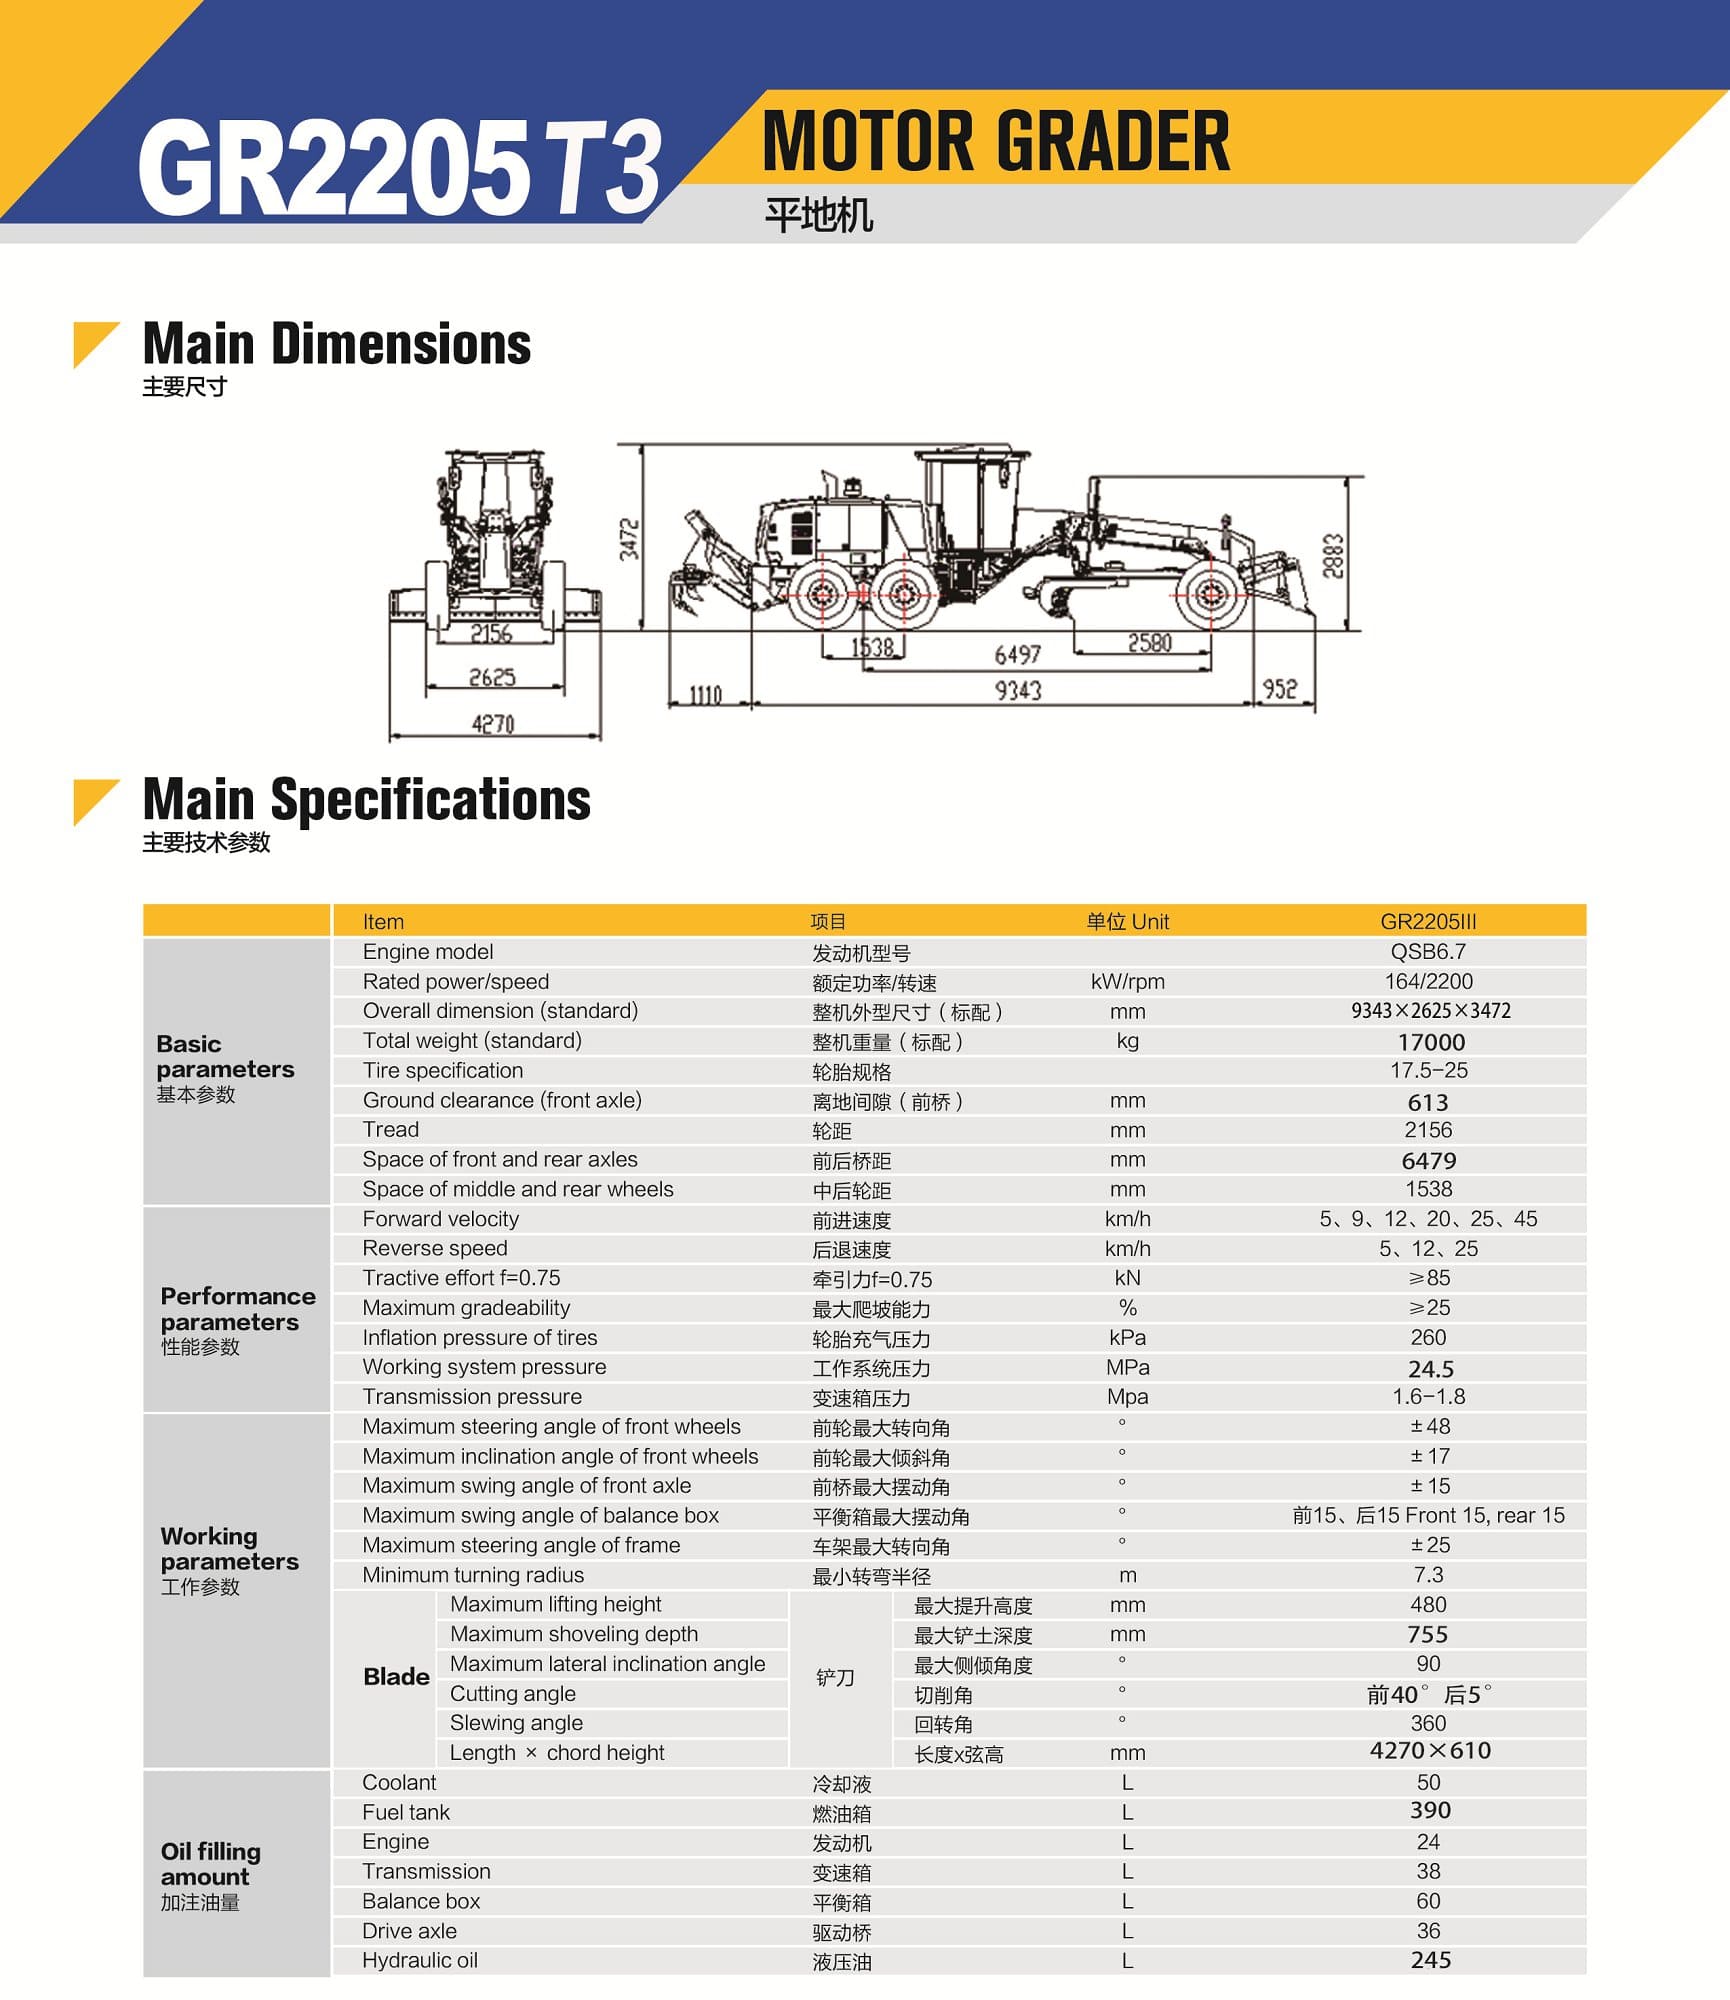 XCMG Official GR2205T3 Motor Grader for sale